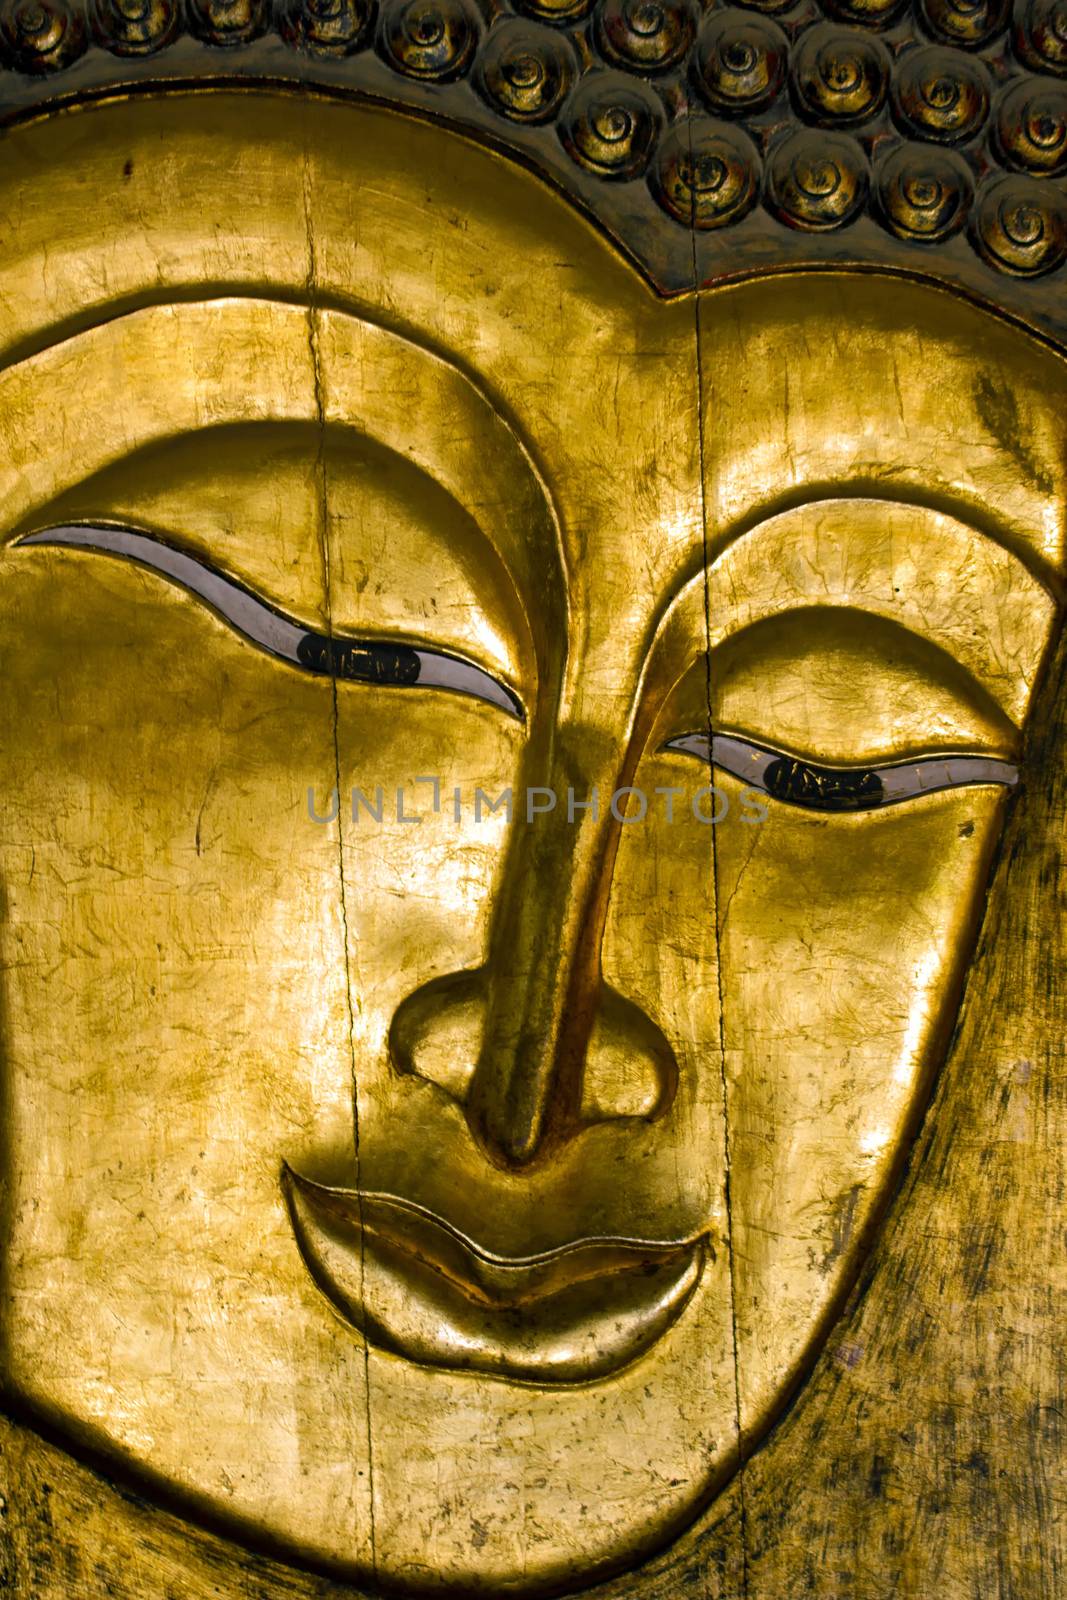 A wooden golden Buddha face.